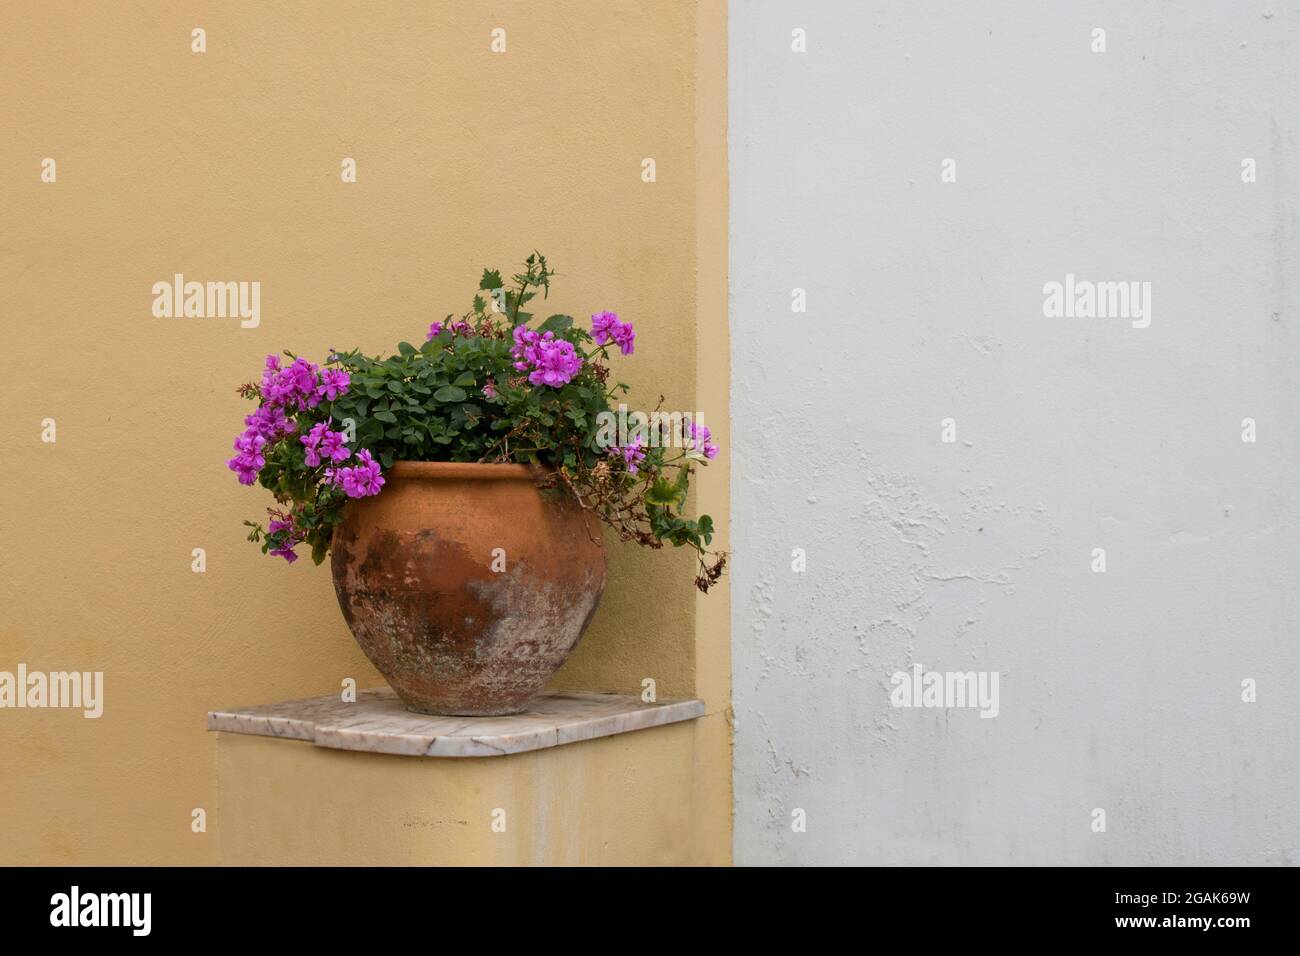 Dettaglio della tradizionale decorazione esterna della casa con gerani rosa in un vecchio vaso di fiori sporchi in piedi su una mensola di marmo e una parete bianca e gialla Foto Stock